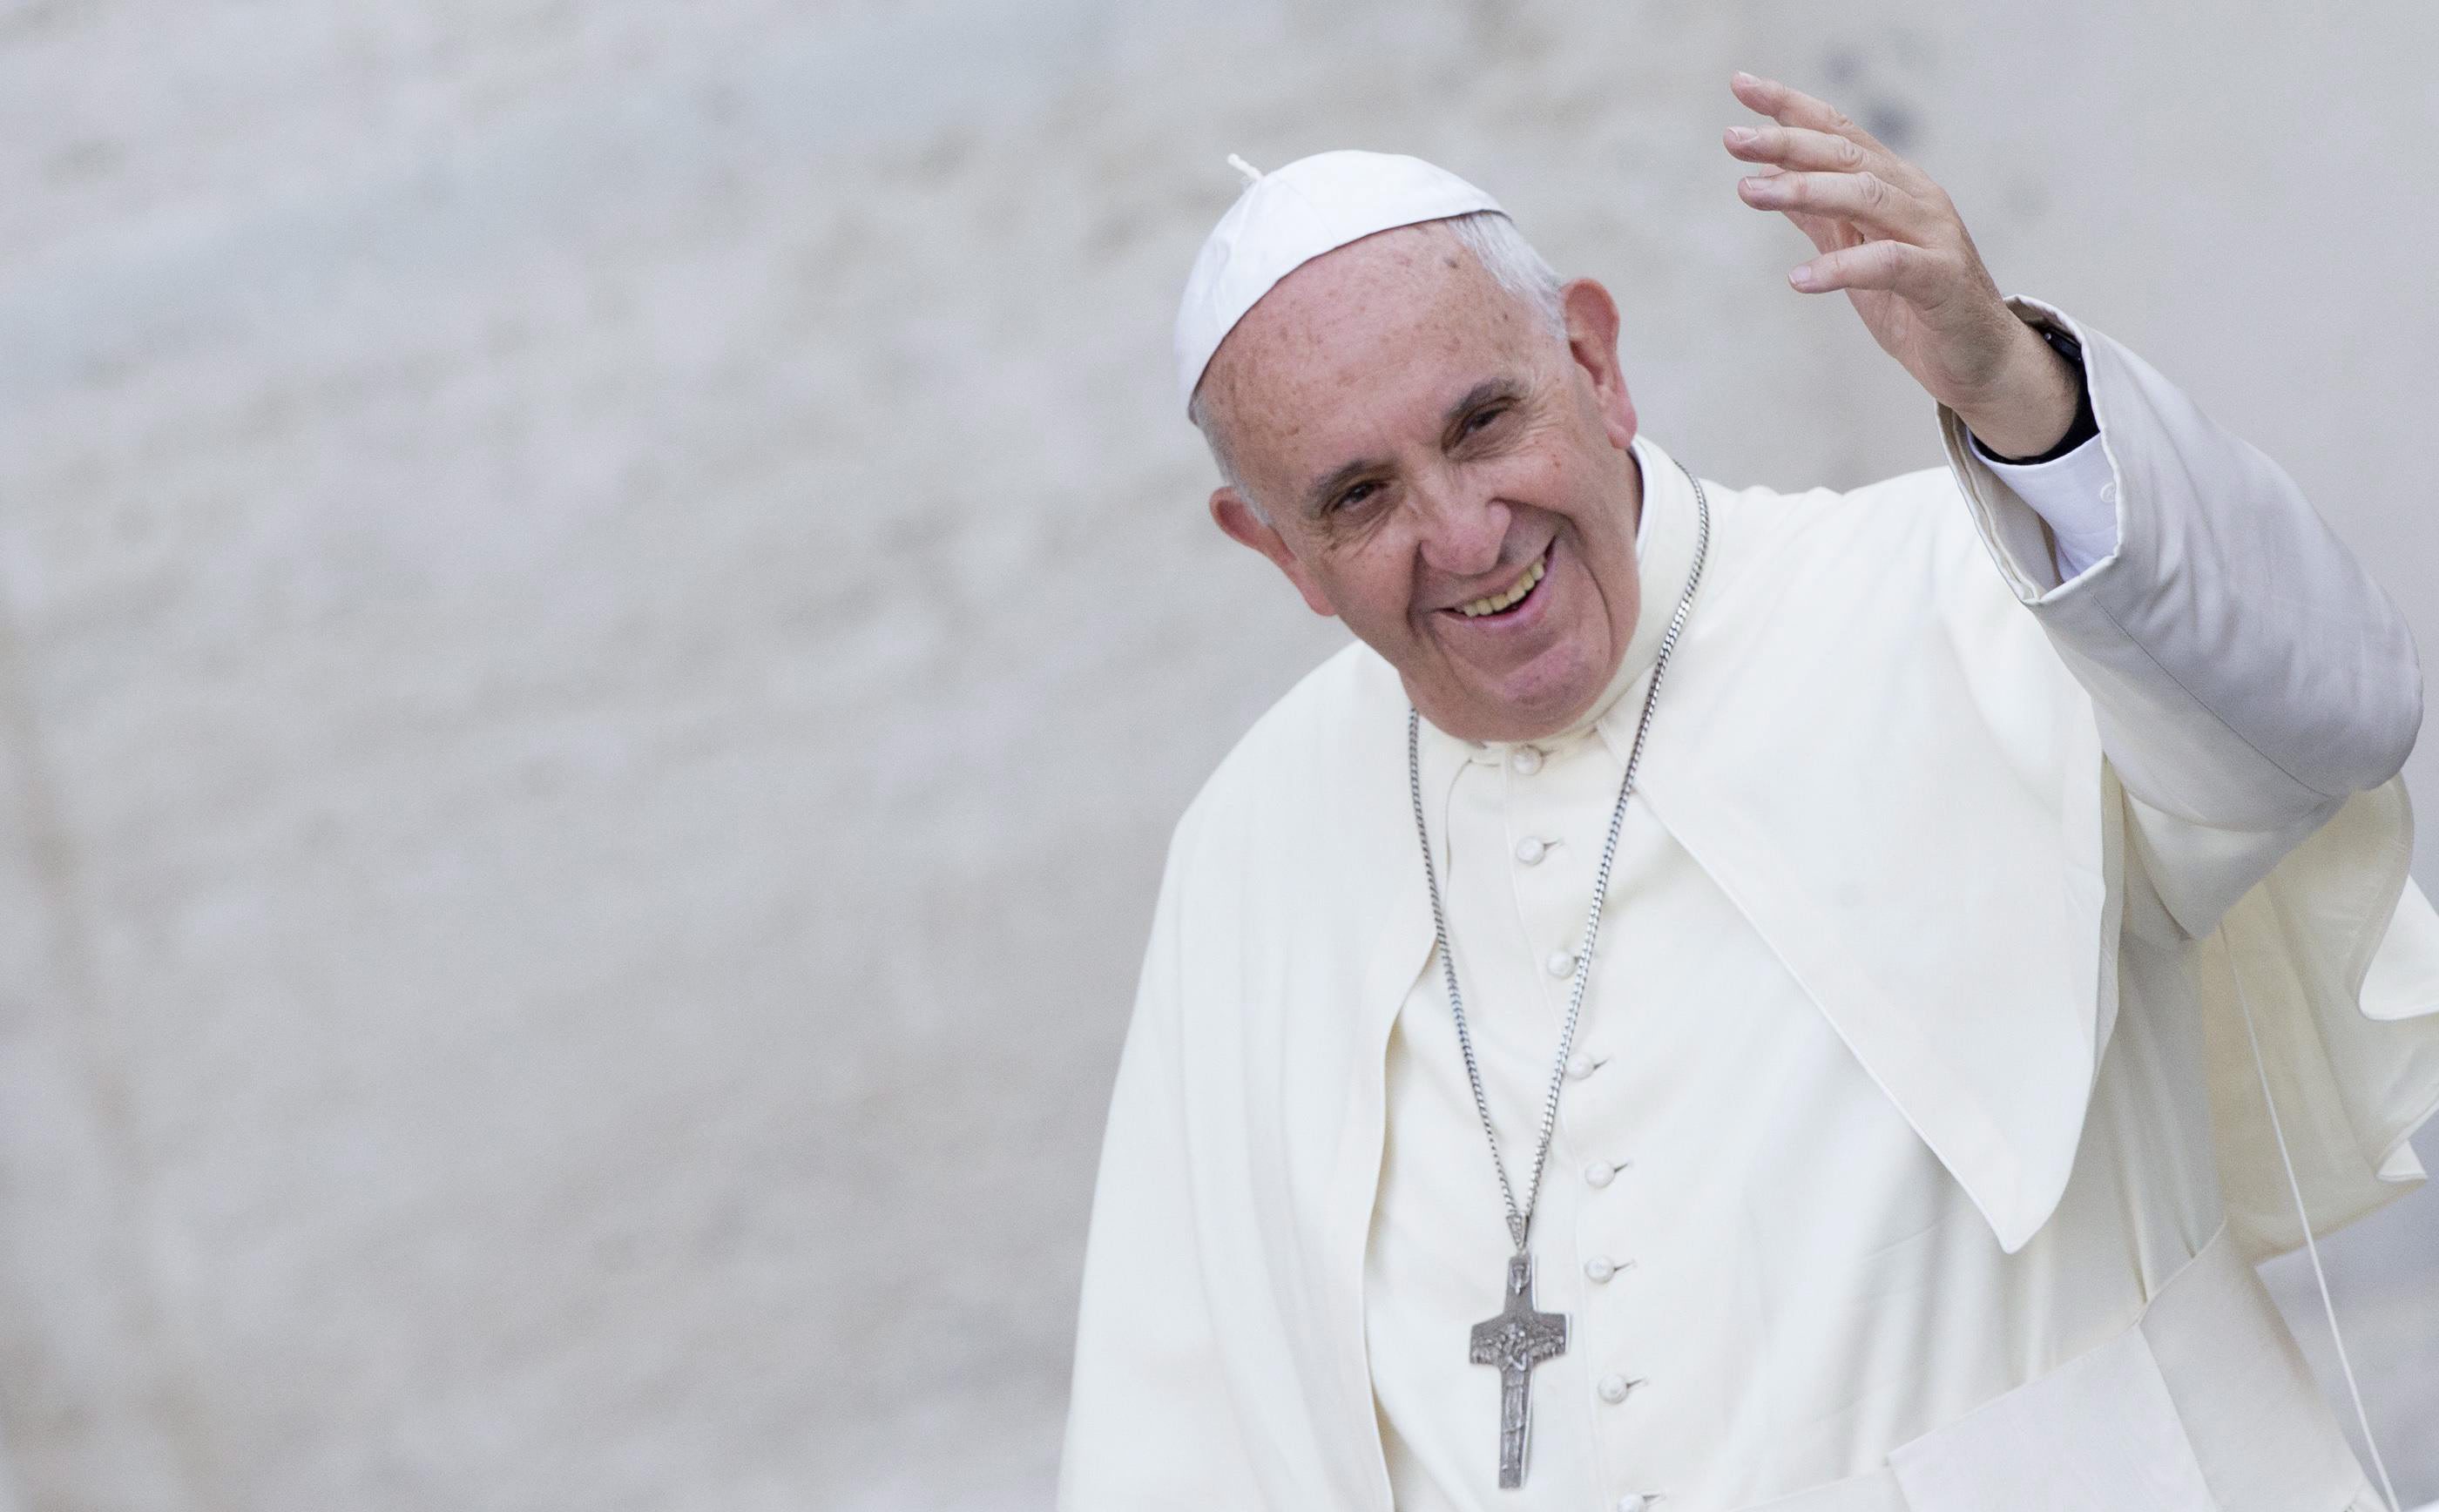 Papa Francisc a cerut sa poata mesteca frunze de coca in vizita pe care o va face in Bolivia